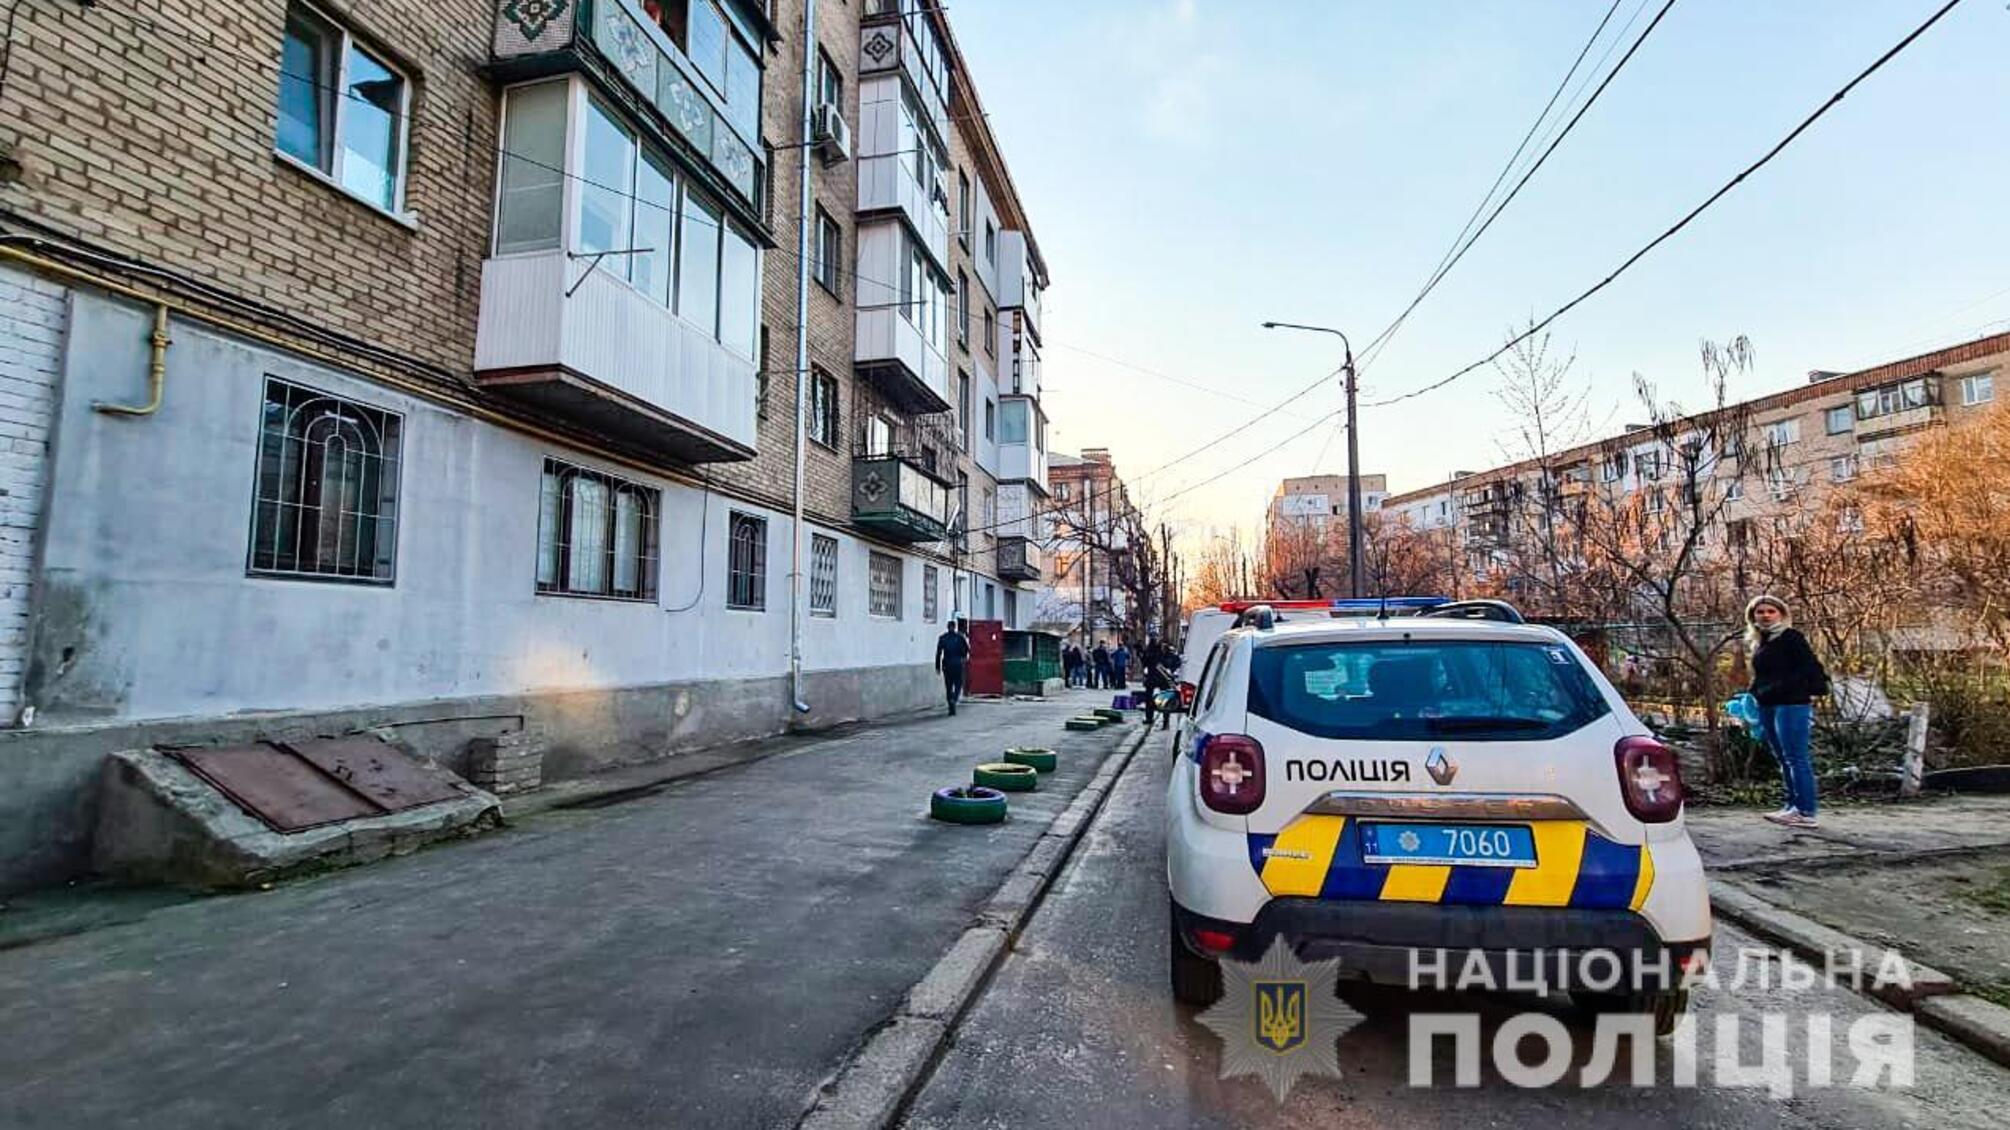 Миколаївця, який забарикадувався в квартирі з бойовою гранатою, слідчі затримали в процесуальному порядку